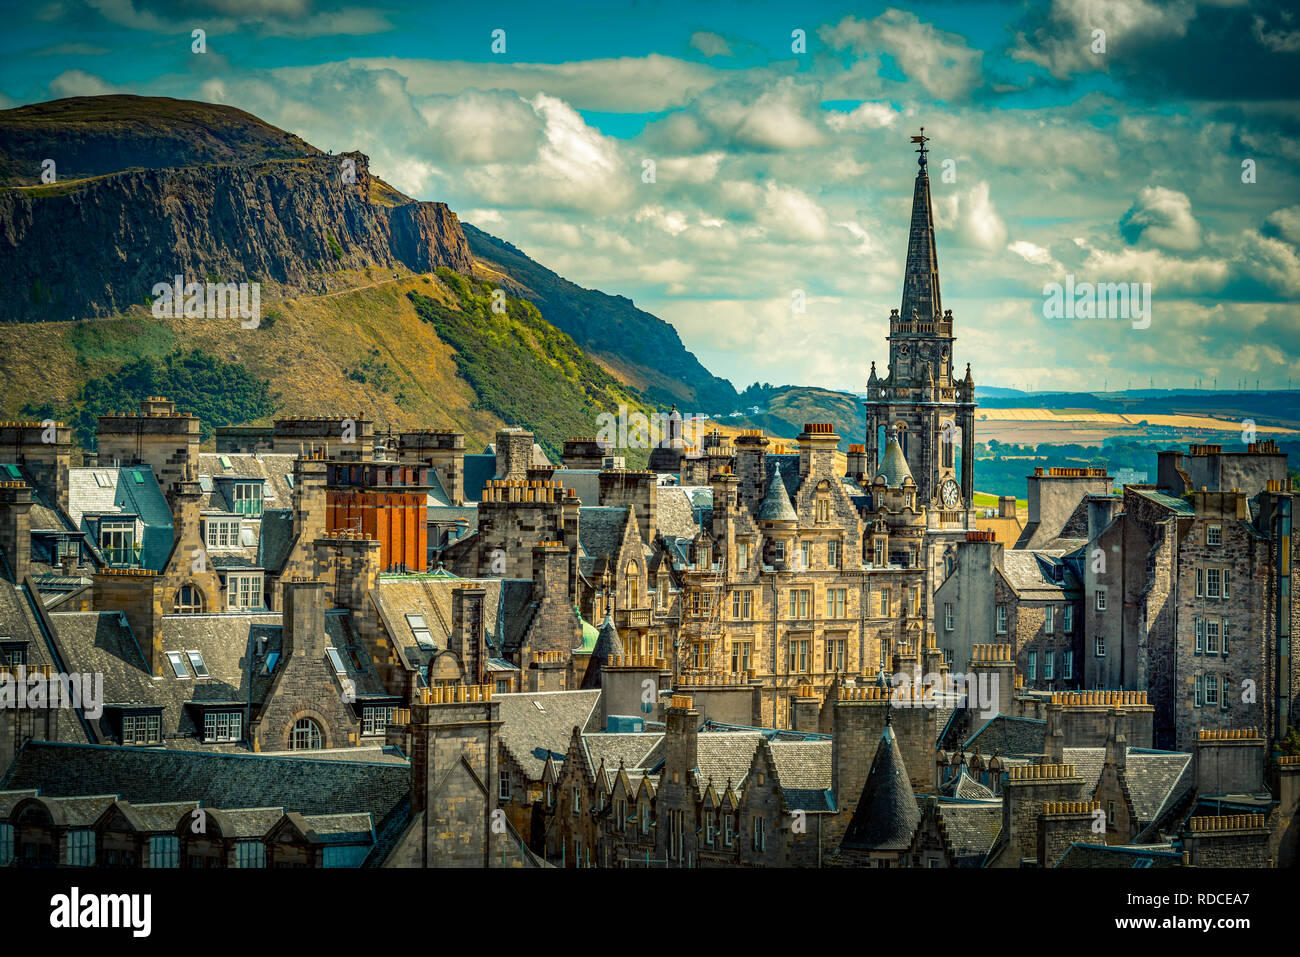 Europa, Großbritannien, Schottland, Edimburgo, Aussichtspunkt, Monumento Scott Holyrood Park, Salisbury Crags Foto Stock